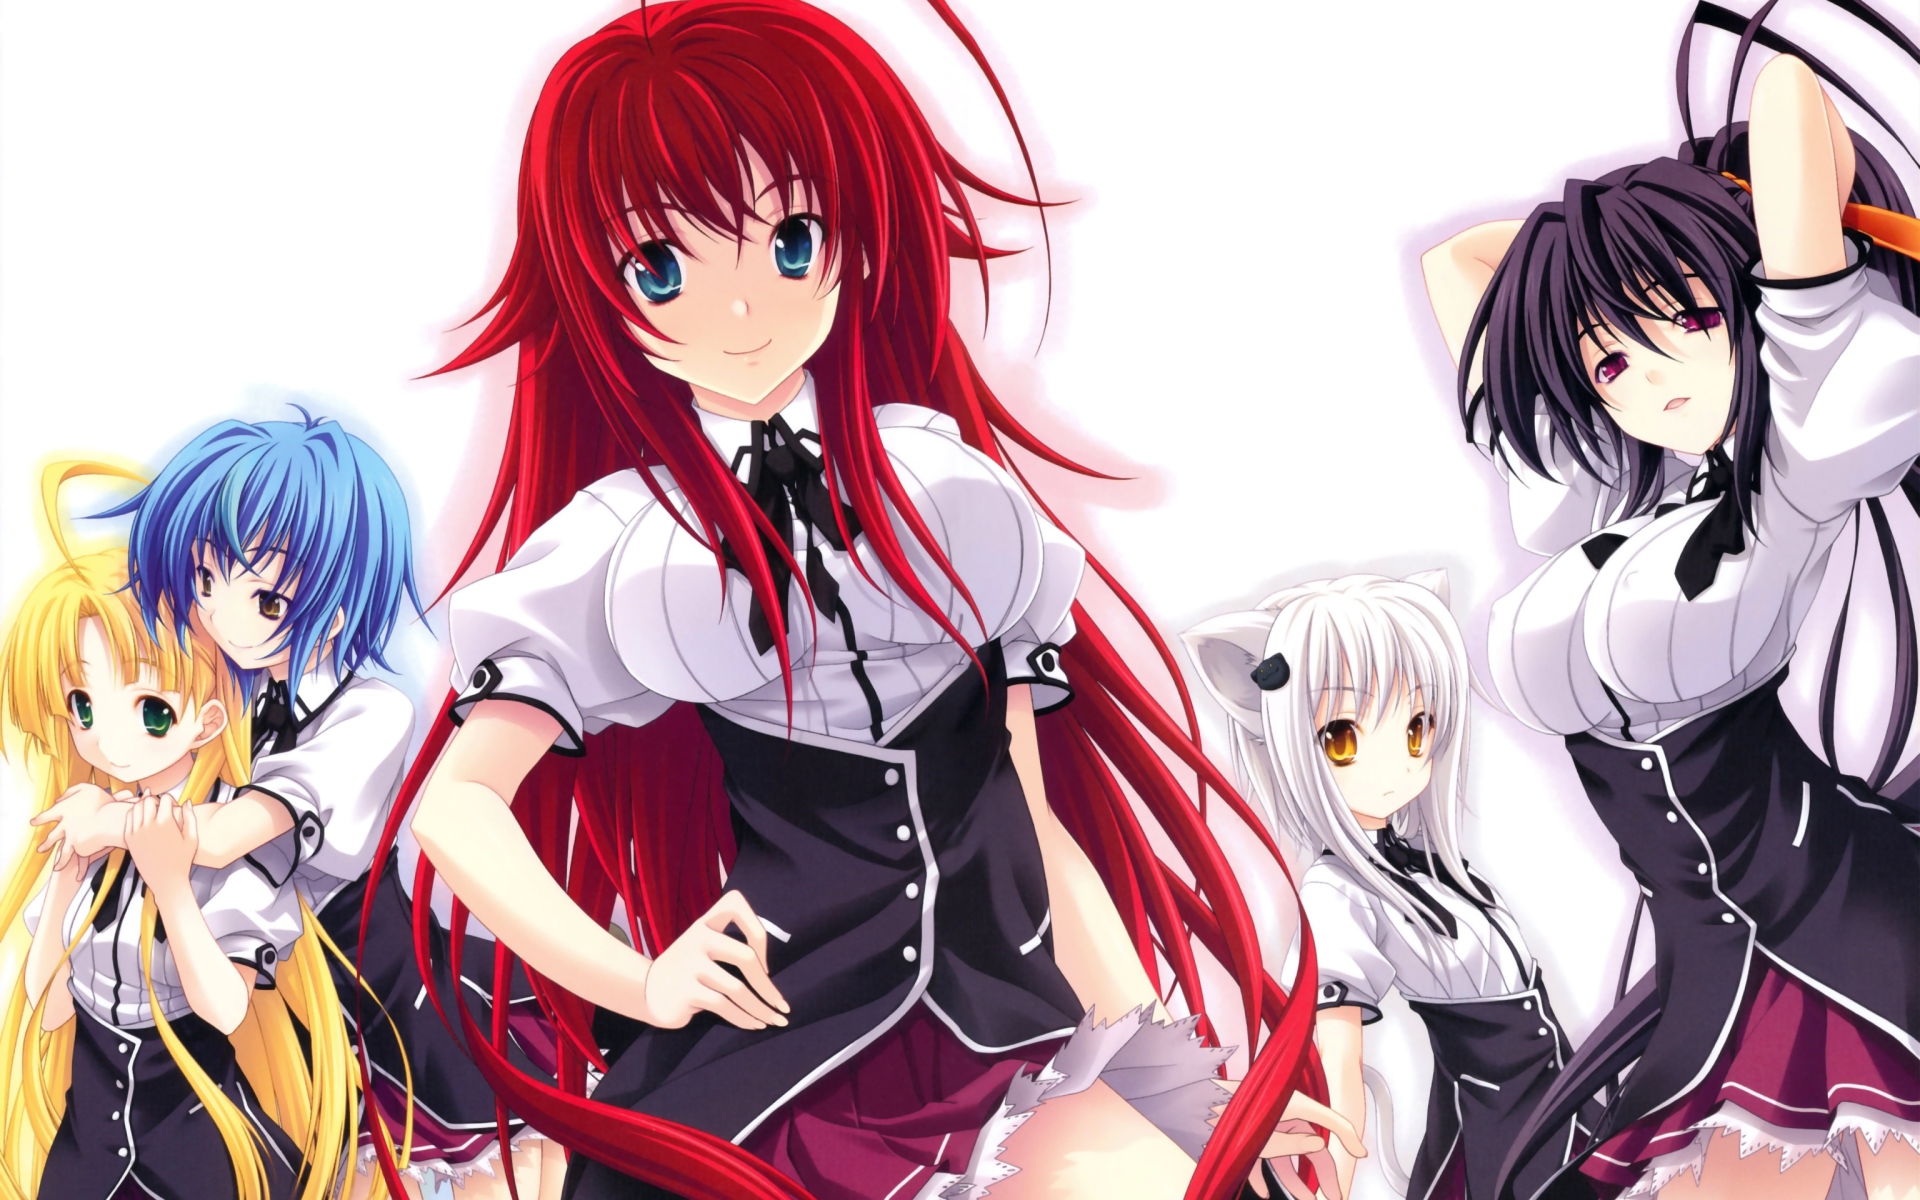 Anime Girls - Fondos de pantalla gratis para Widescreen escritorio PC  1920x1080 Full HD